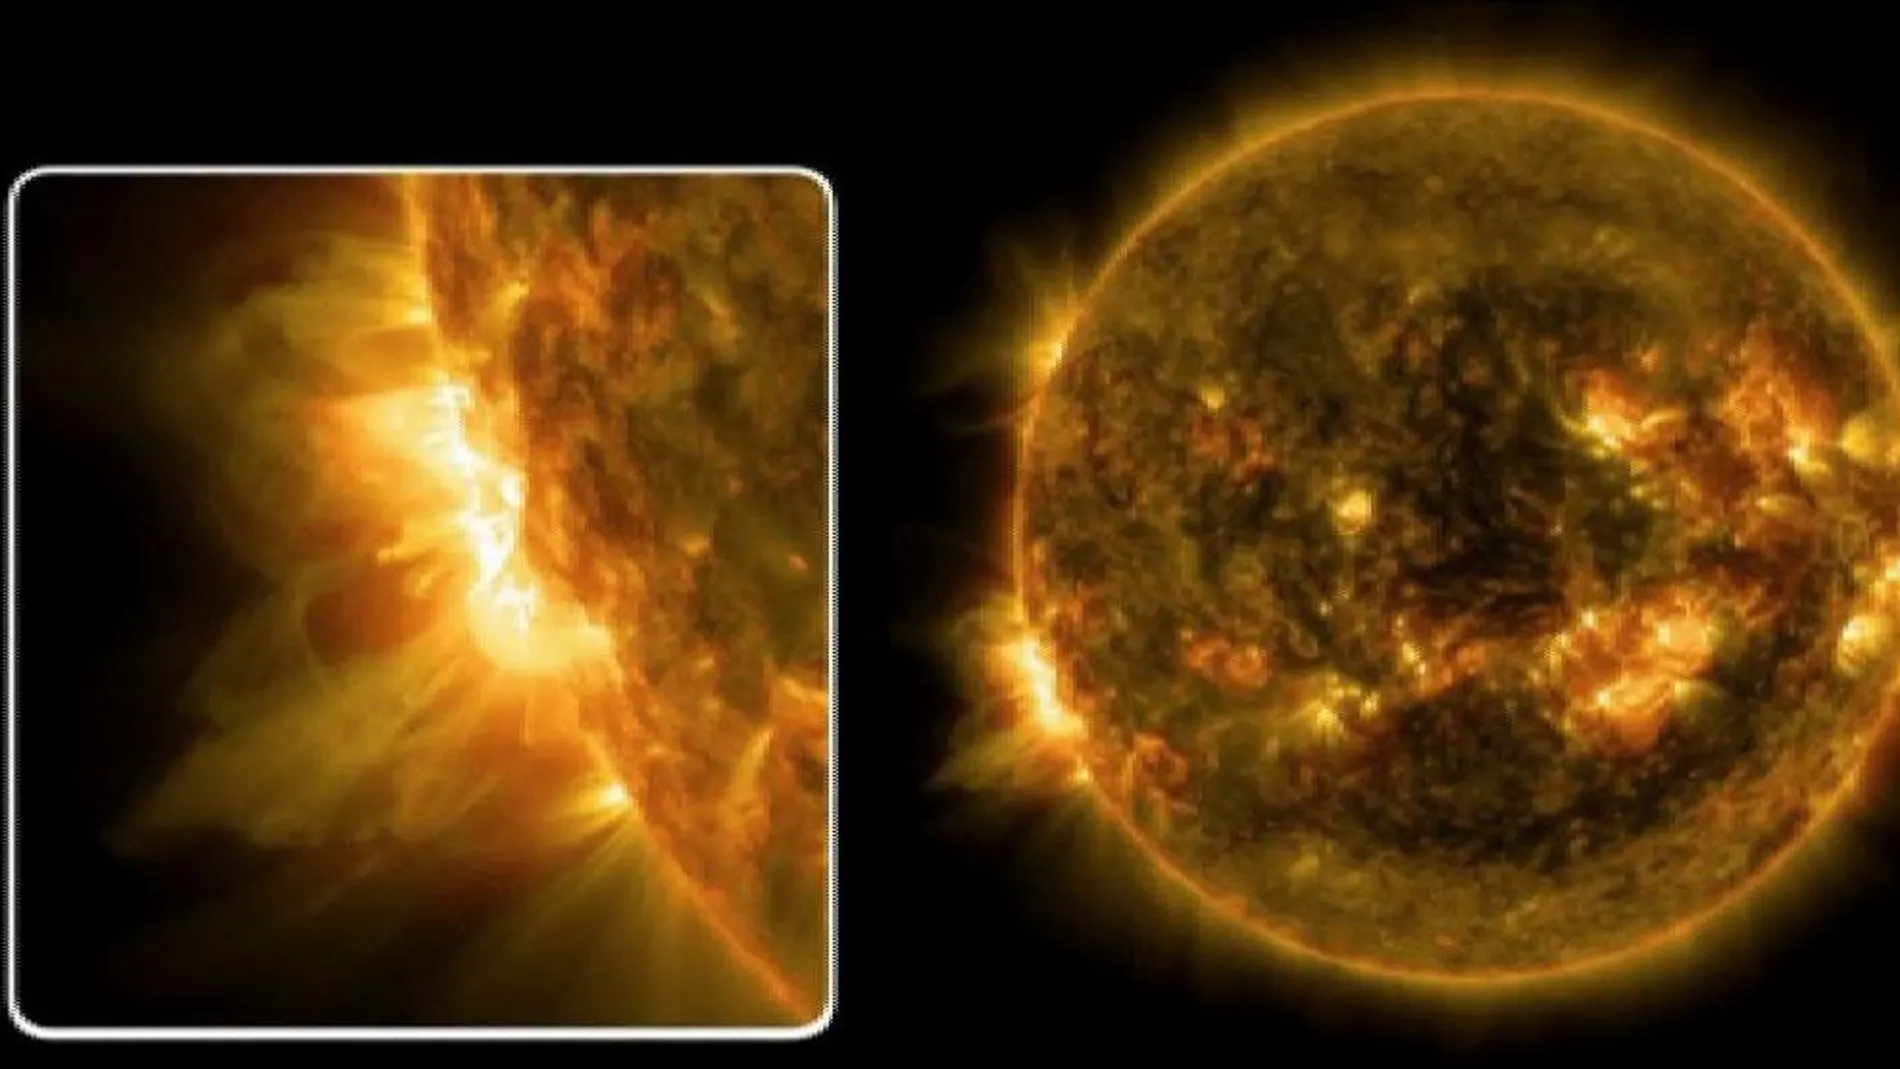 La NASA muestra dos erupciones solares